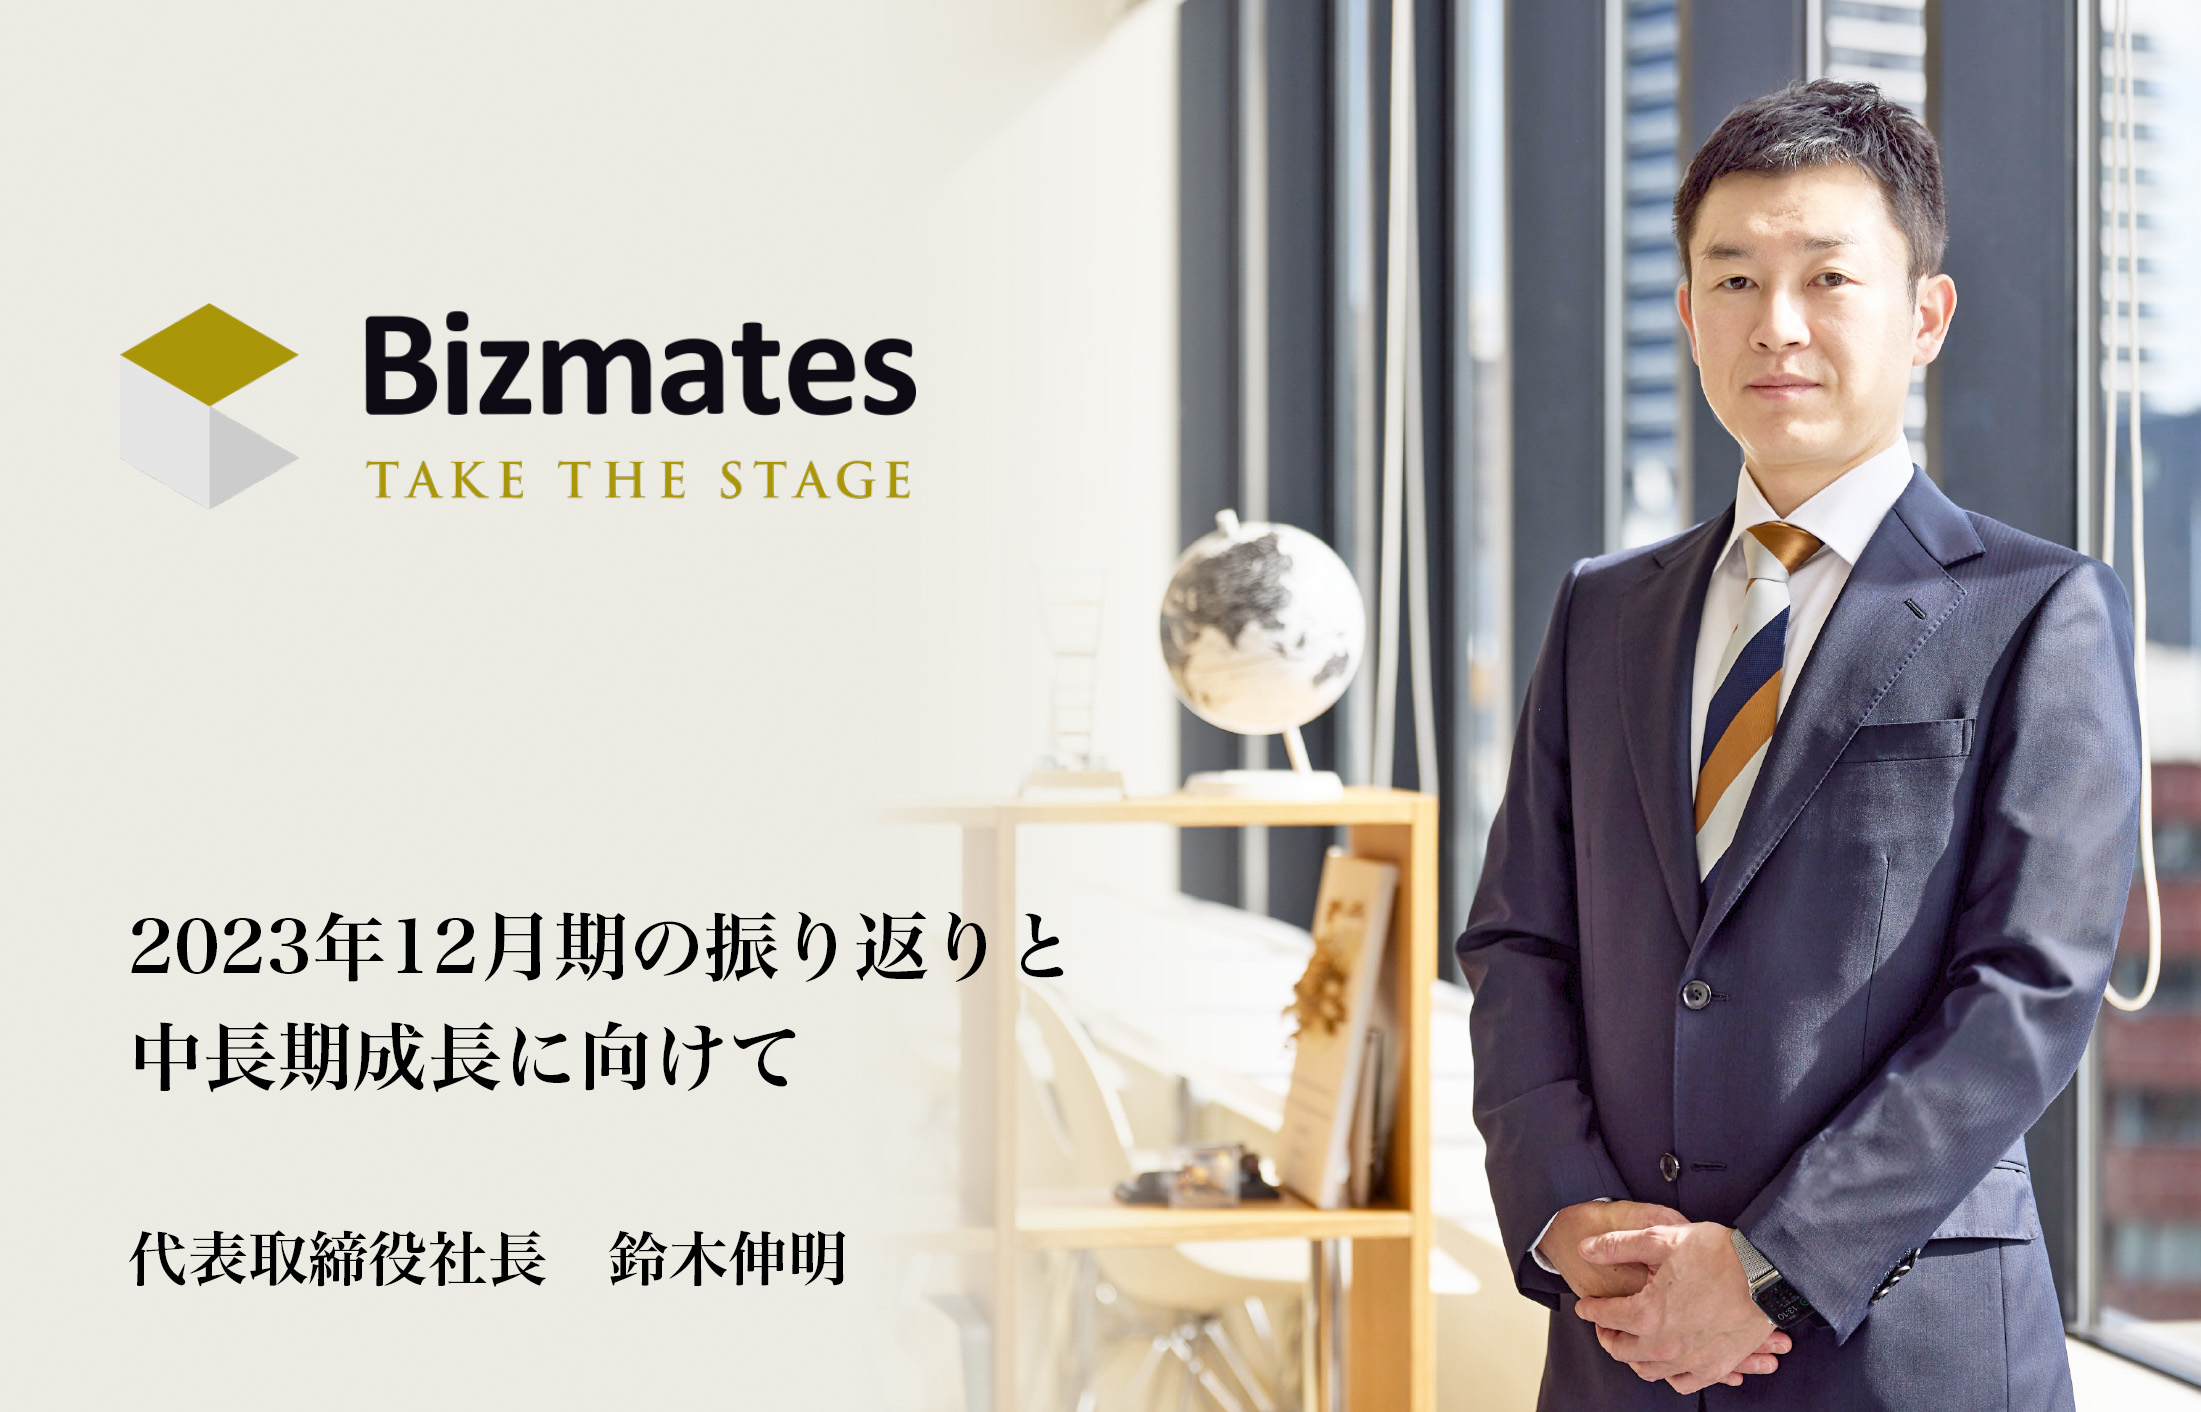 2023年12月期の振り返りと中長期成長に向けて　代表取締役社長 鈴木伸明